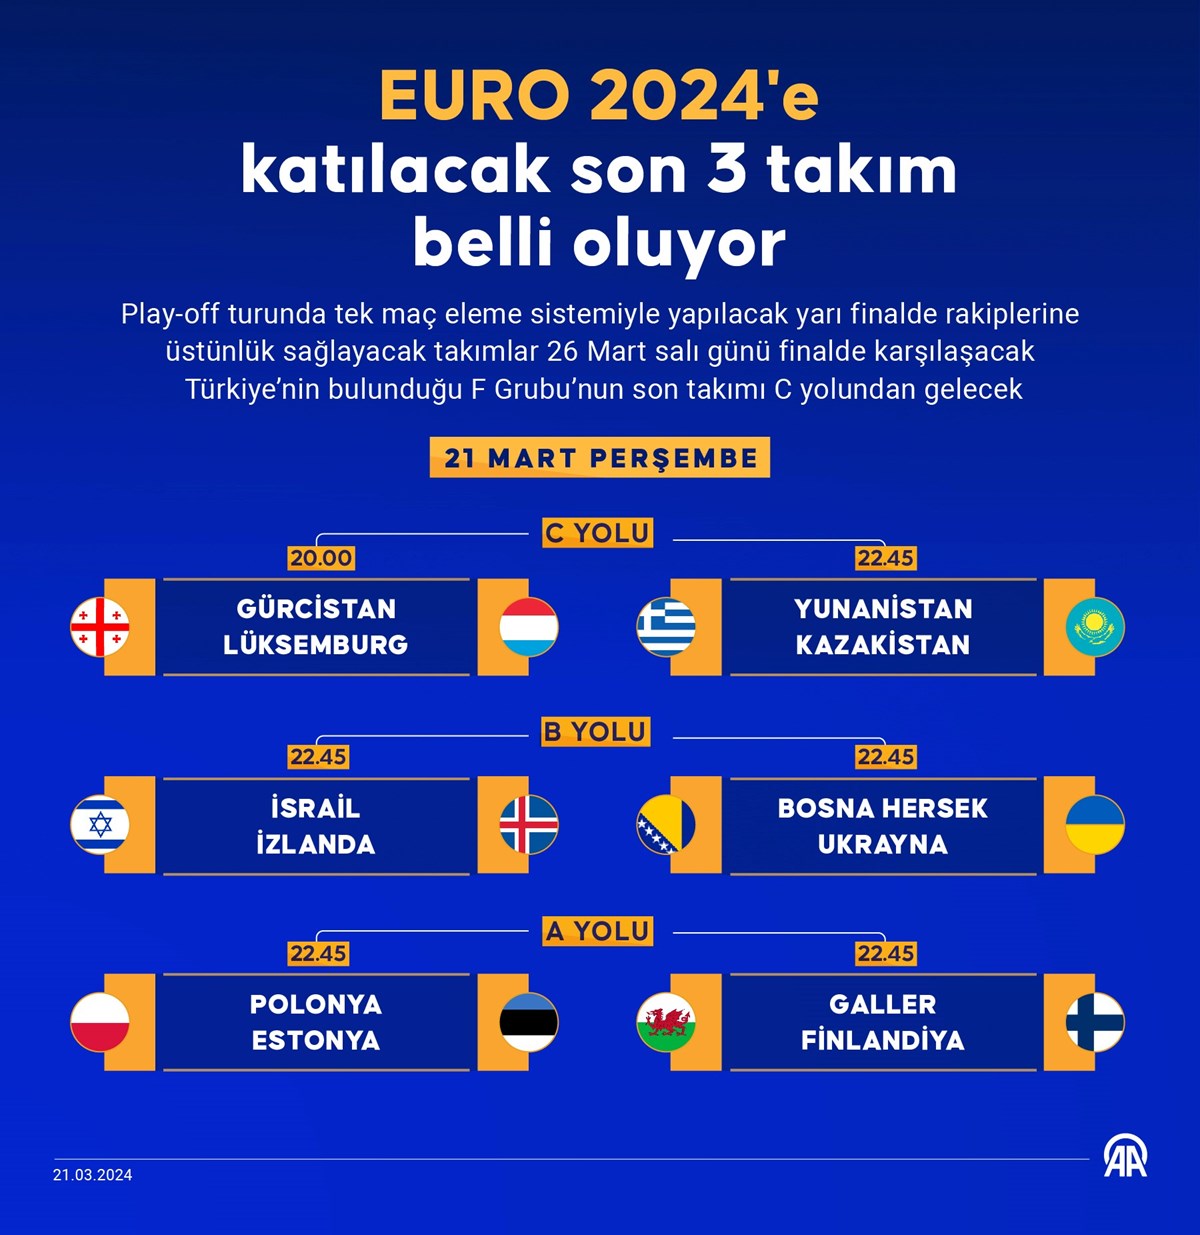 Türkiye'nin EURO 2024'teki son rakibi belli oluyor